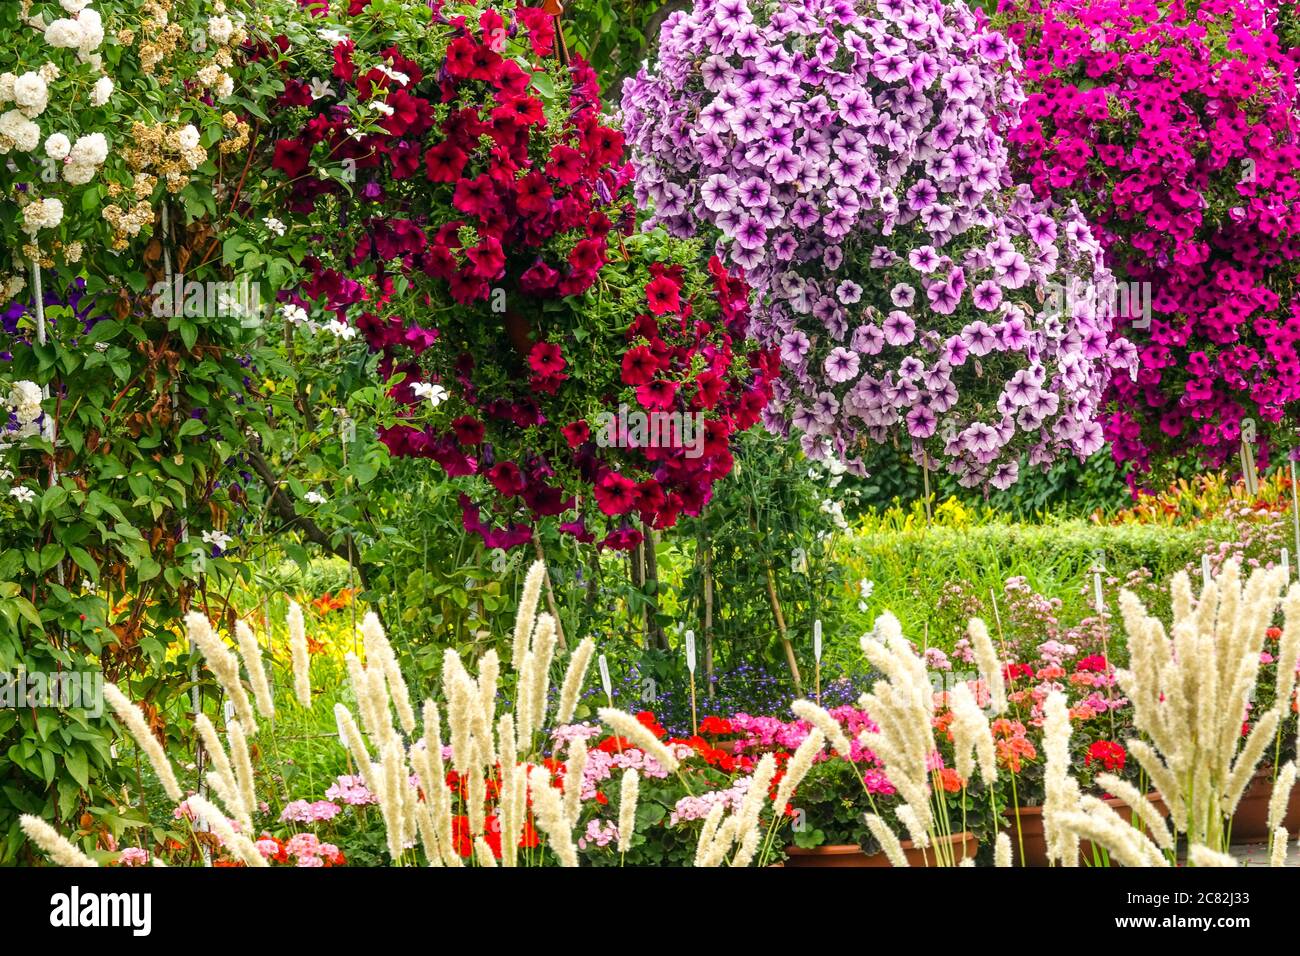 Bunte Blumen hängen in Töpfen im juli Garten Petunien Stockfoto